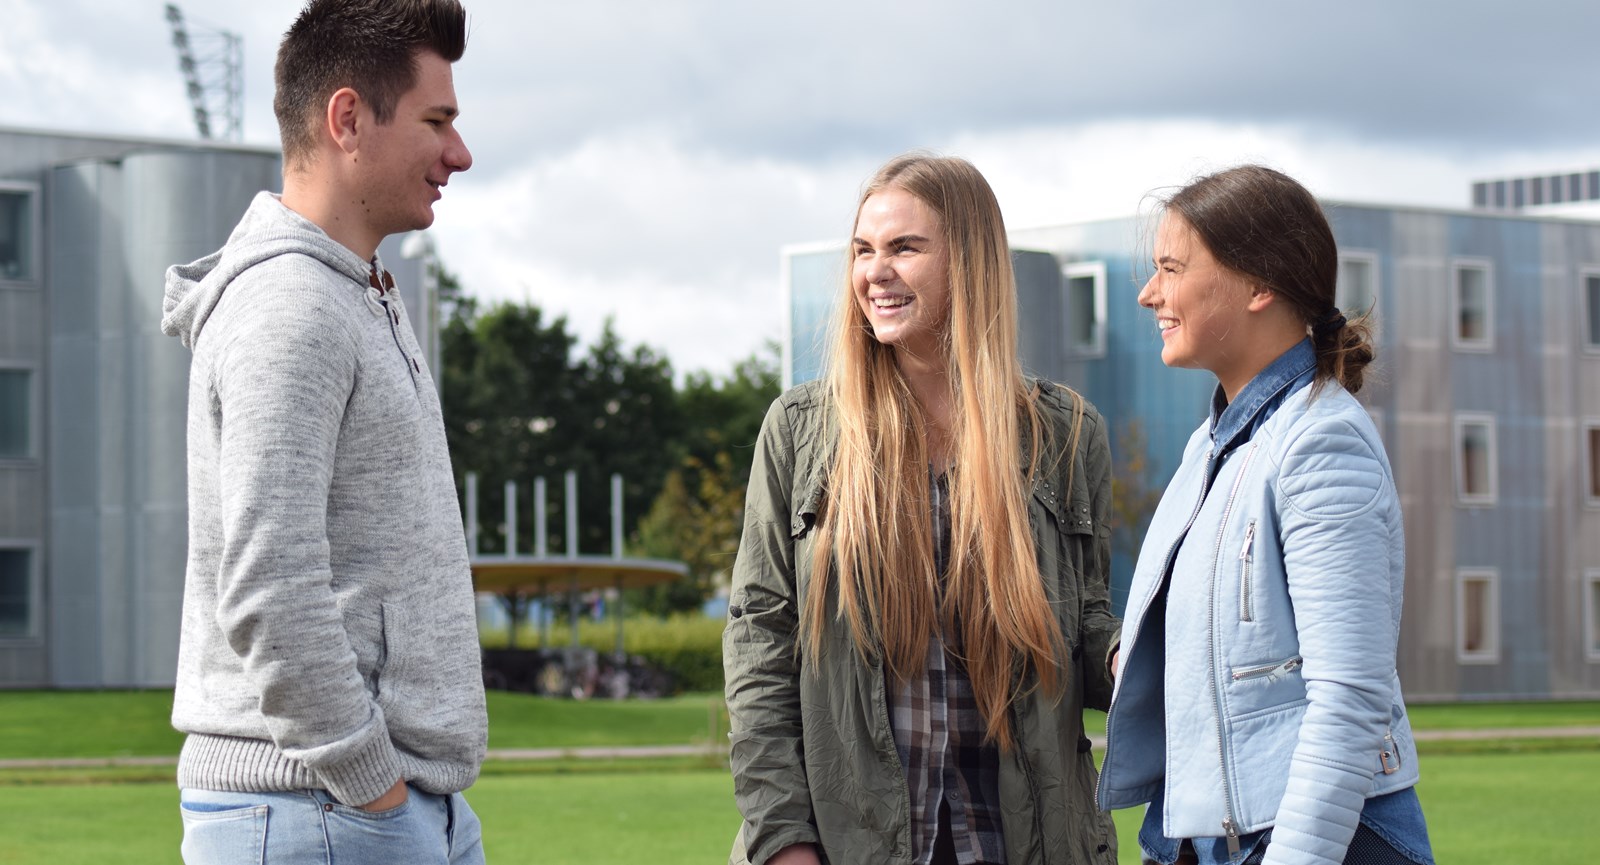 Studerende fra udlandet smiler til hinanden og bidrager til et internationalt studiemiljø hos Erhvervsakademi Dania